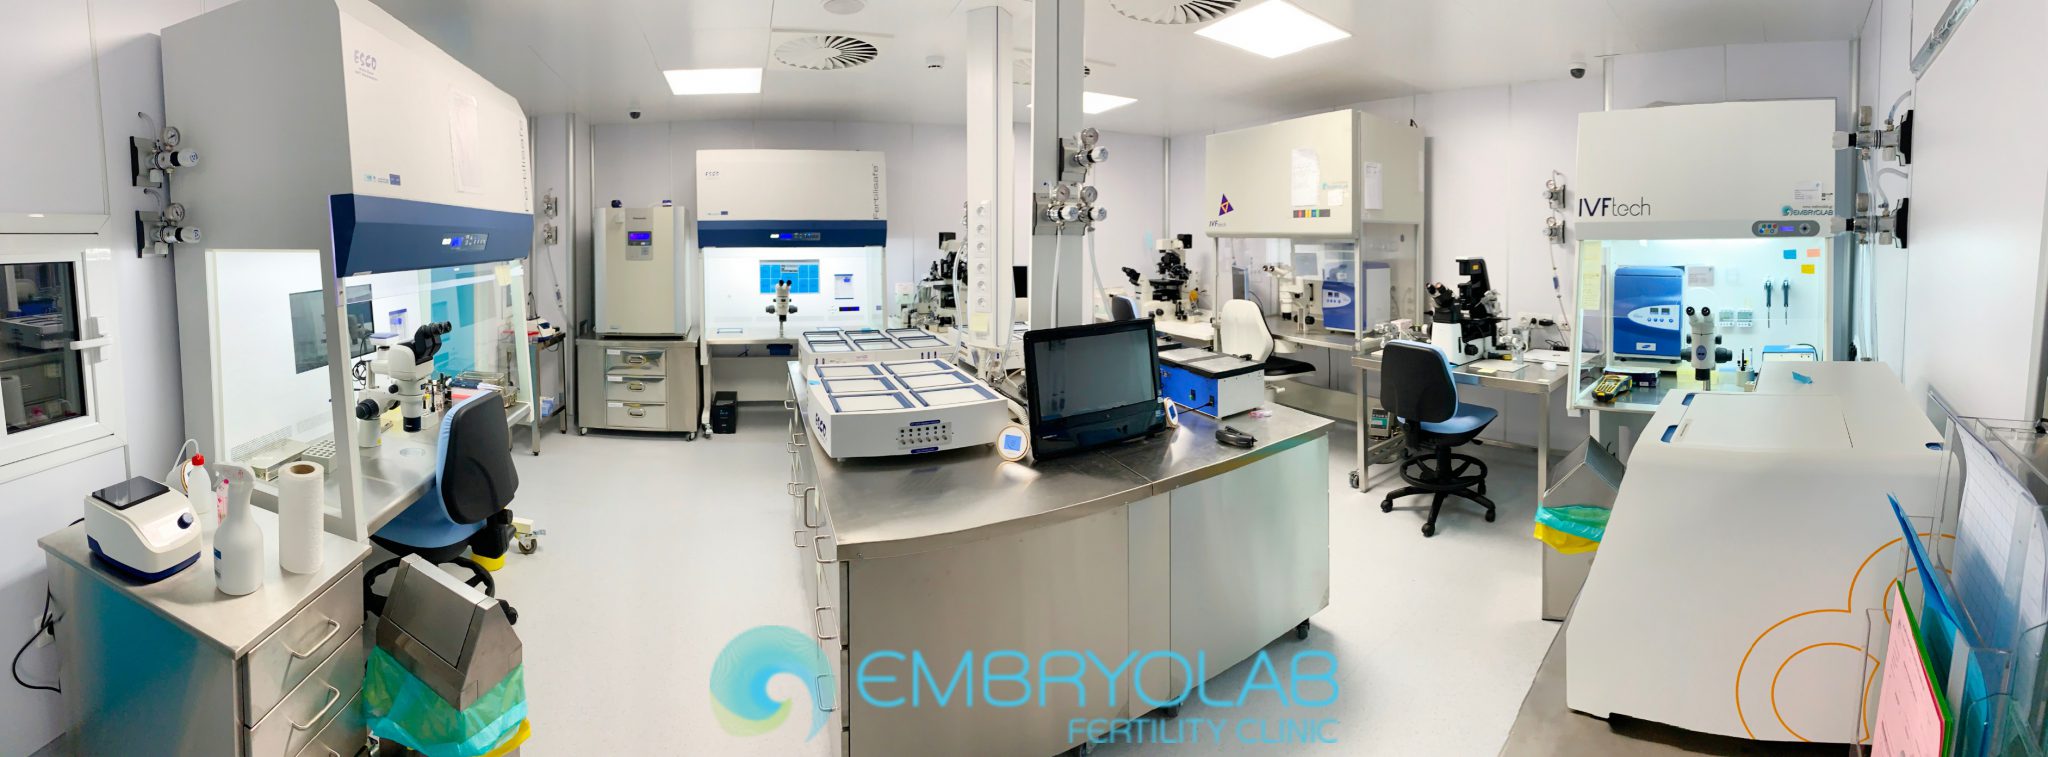 Embryolab IVF lab